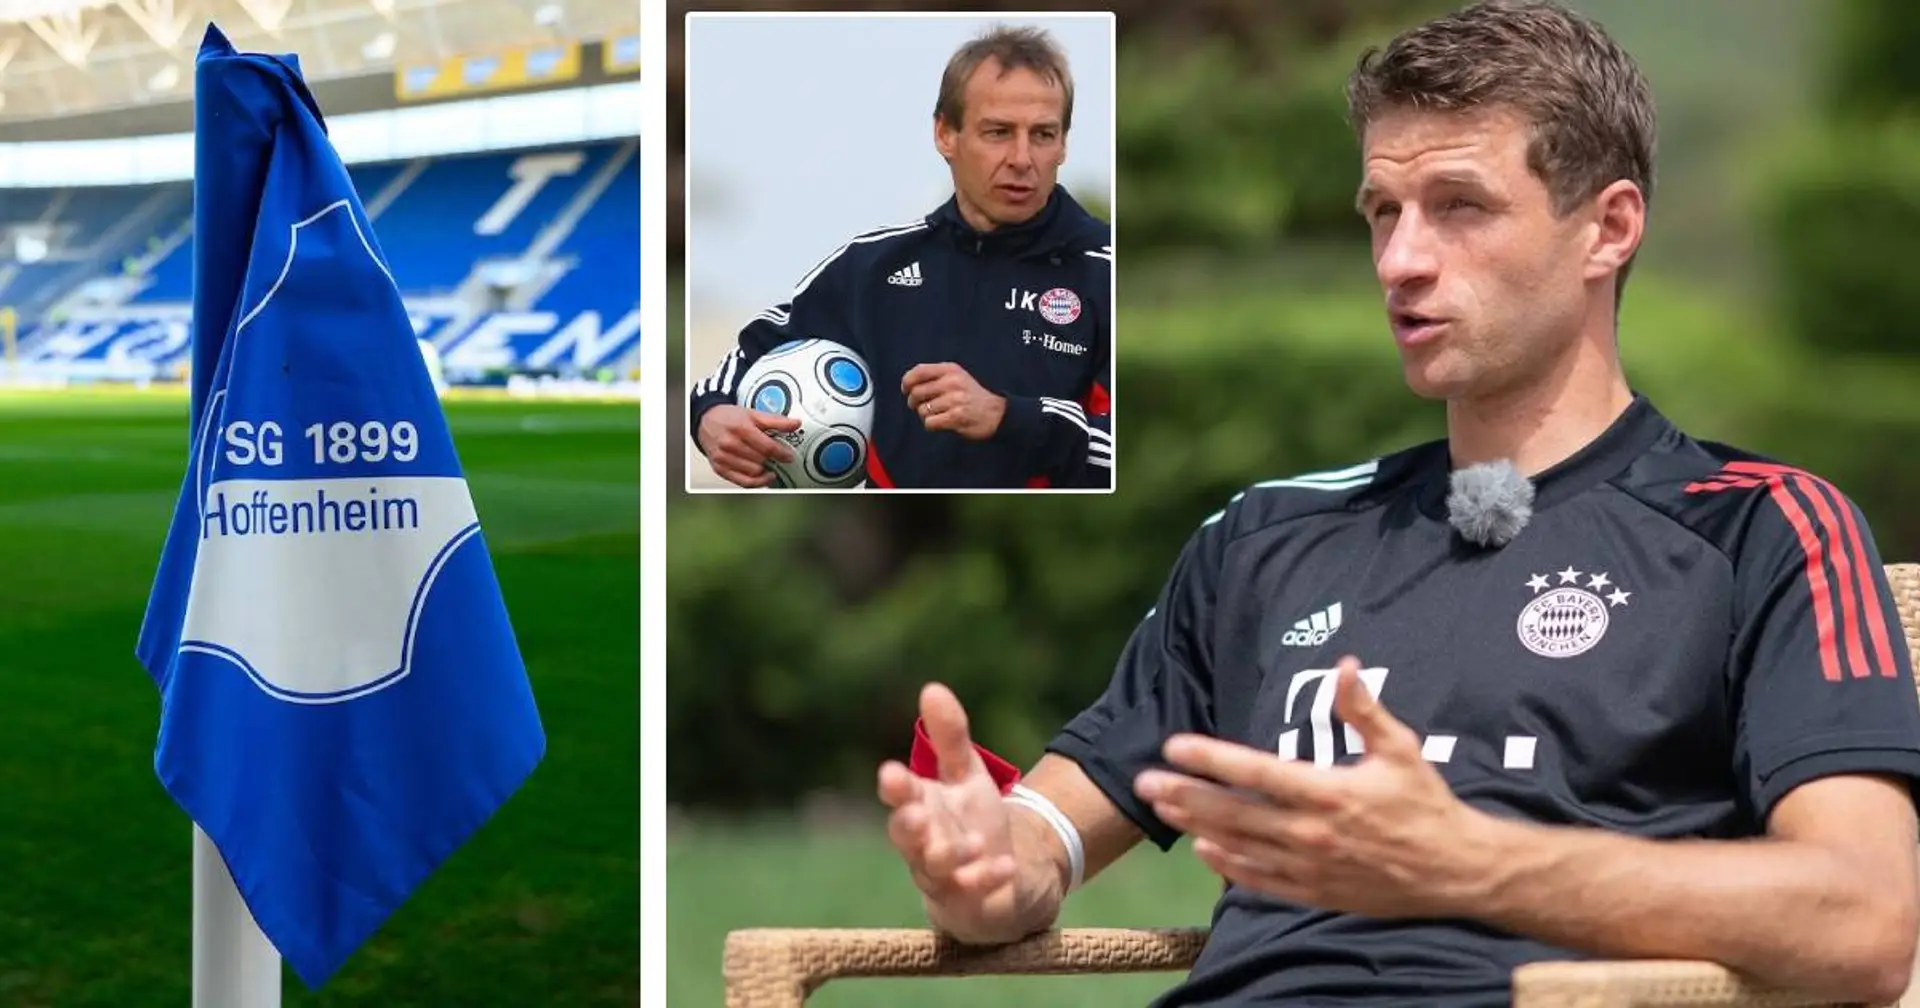 "Da stand ich kurz vor einem Transfer": Müller erinnert sich an seinen geplatzten Hoffenheim-Wechsel